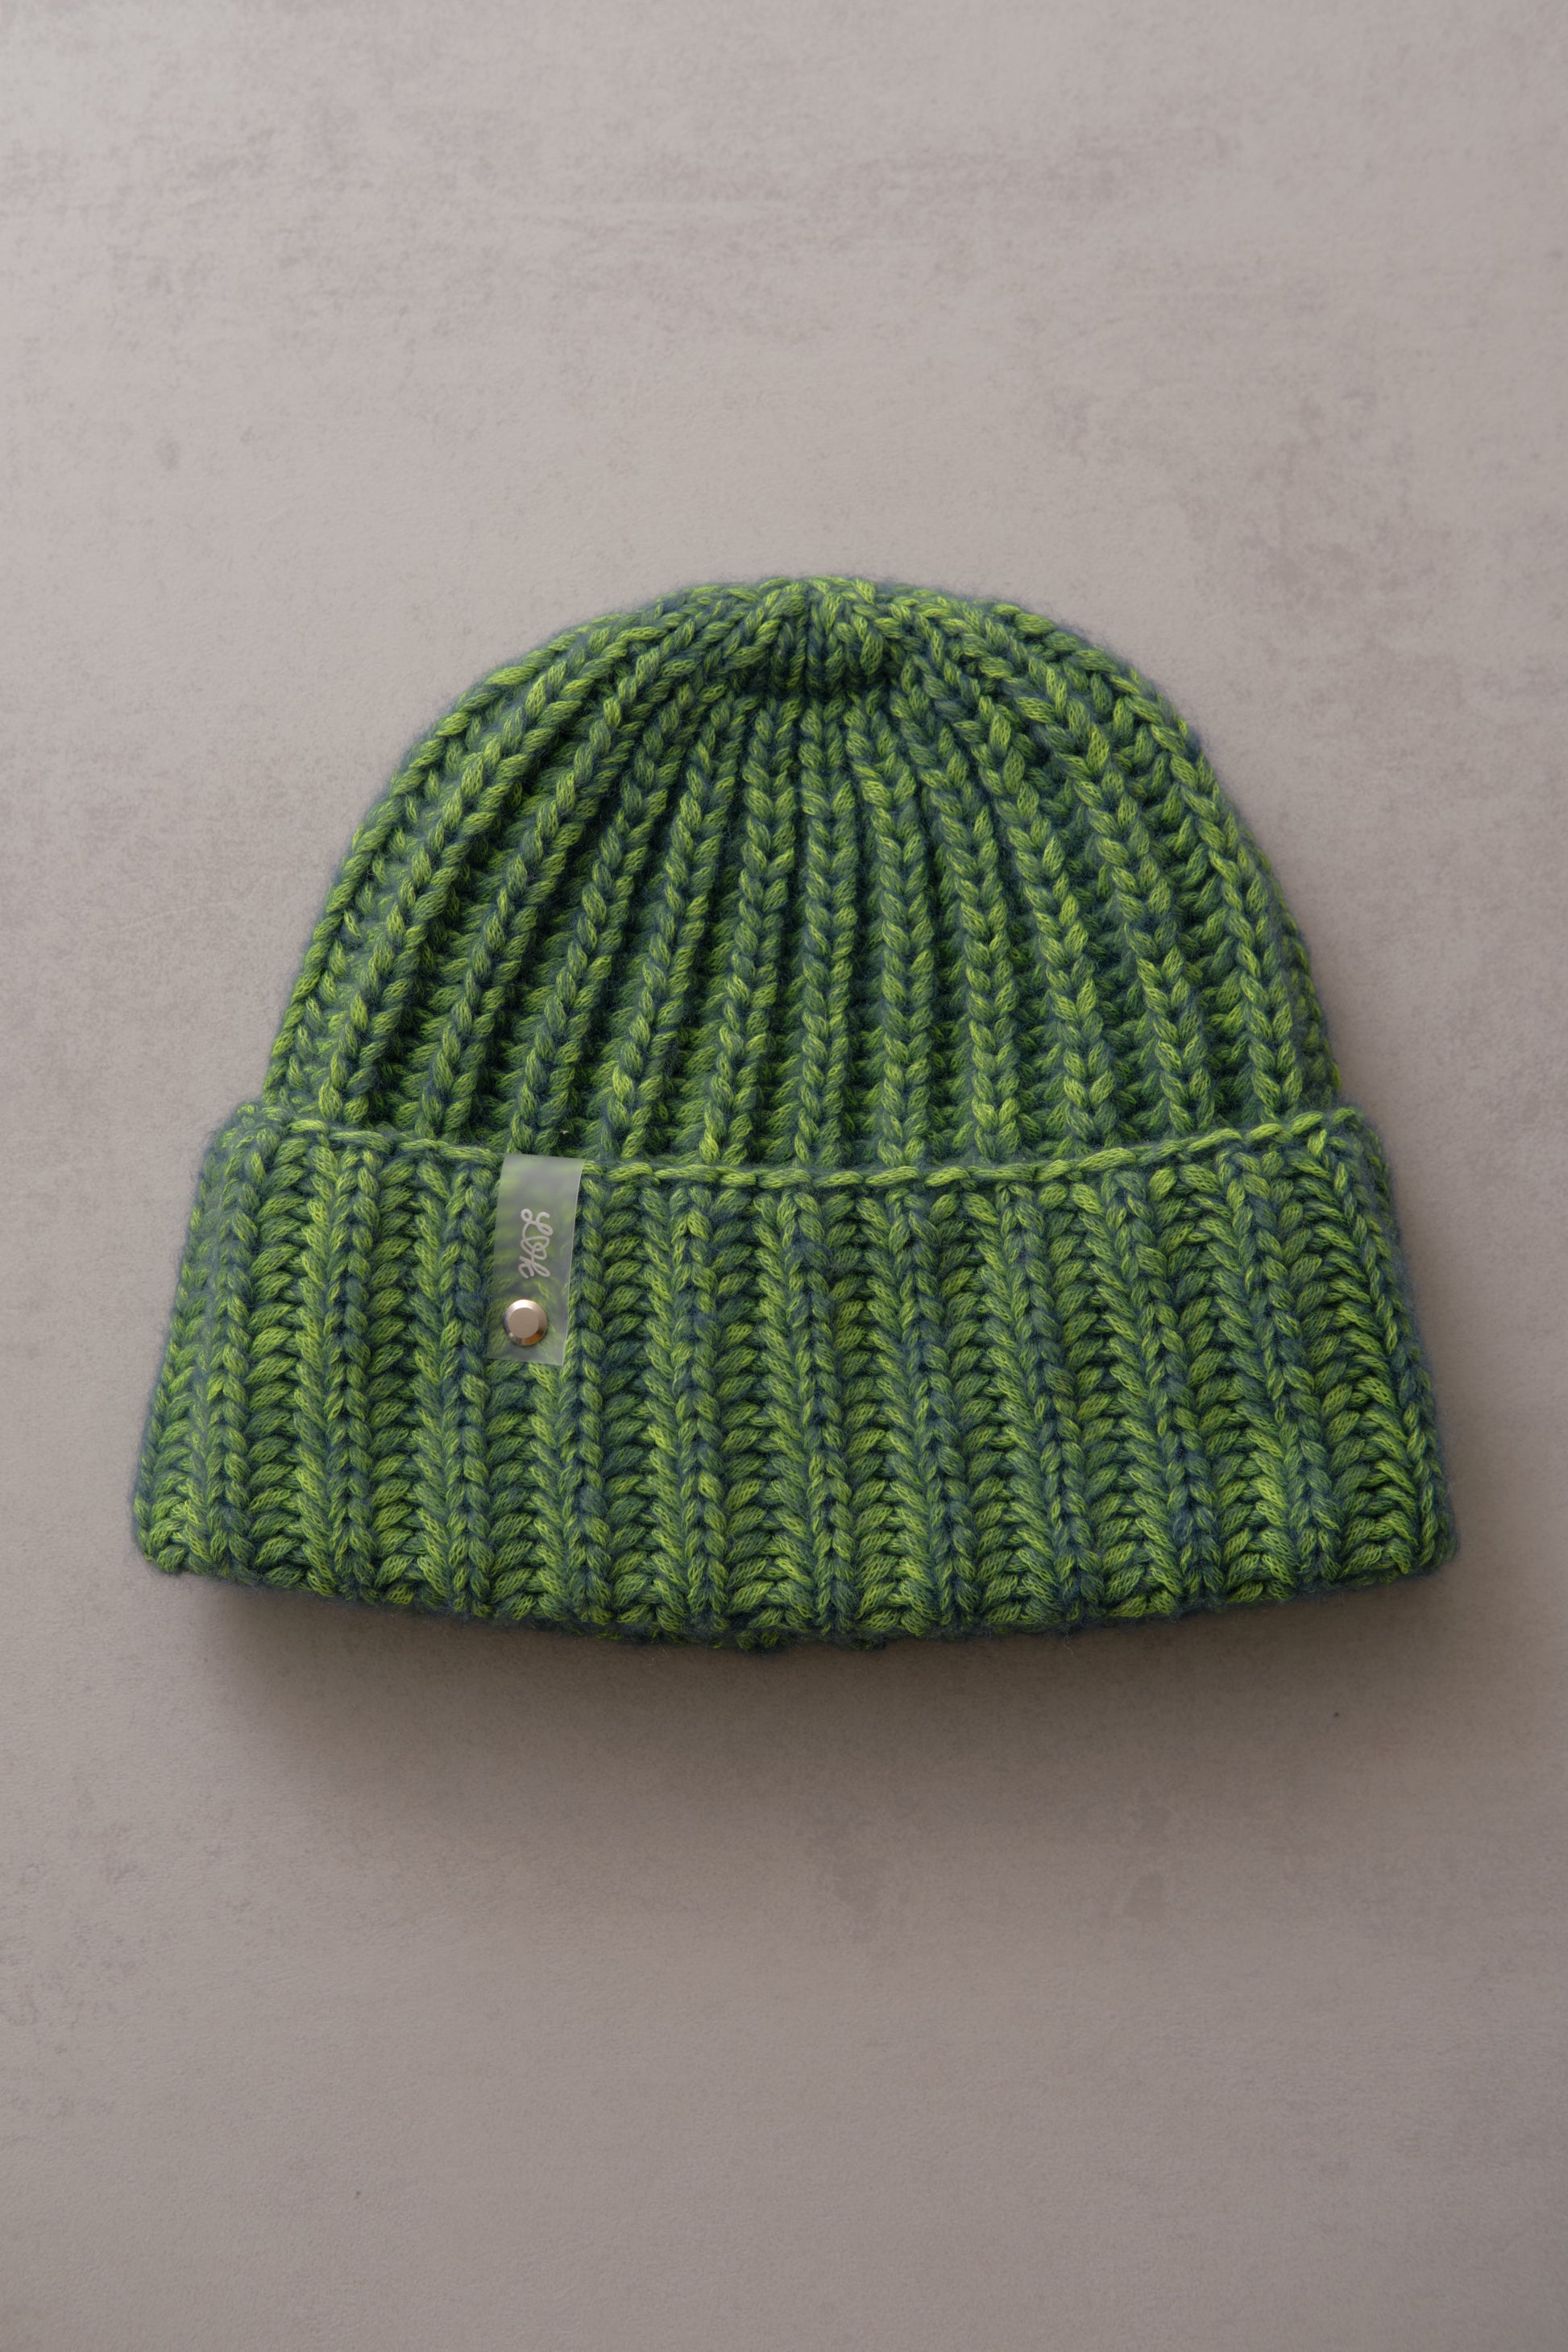 Hand-knitted hat in neon colors – lenalovesknitting